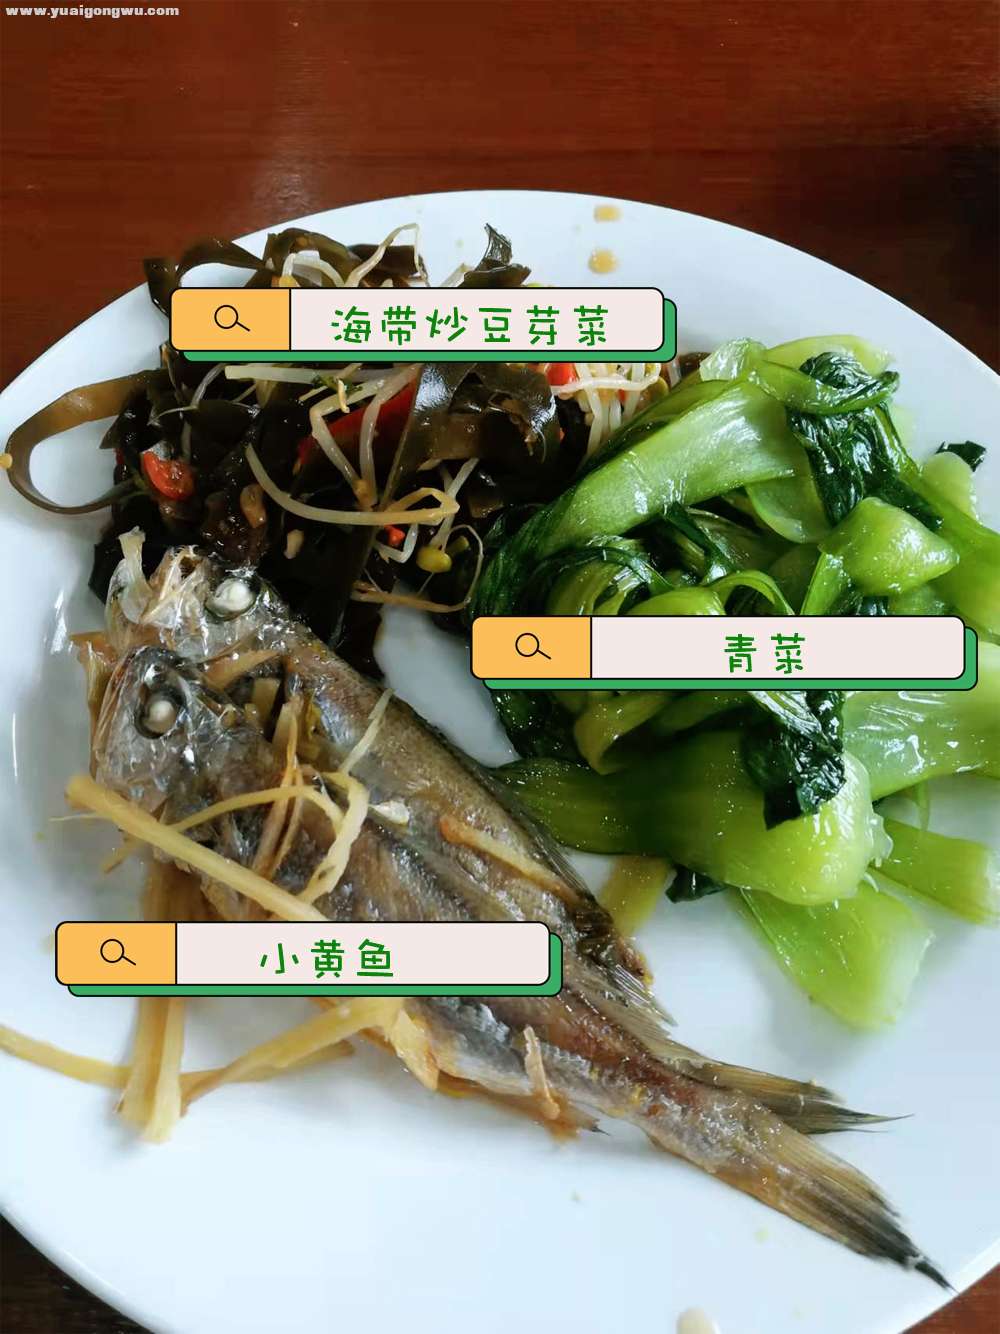 中餐：小黄鱼两条、青菜、海带炒豆芽